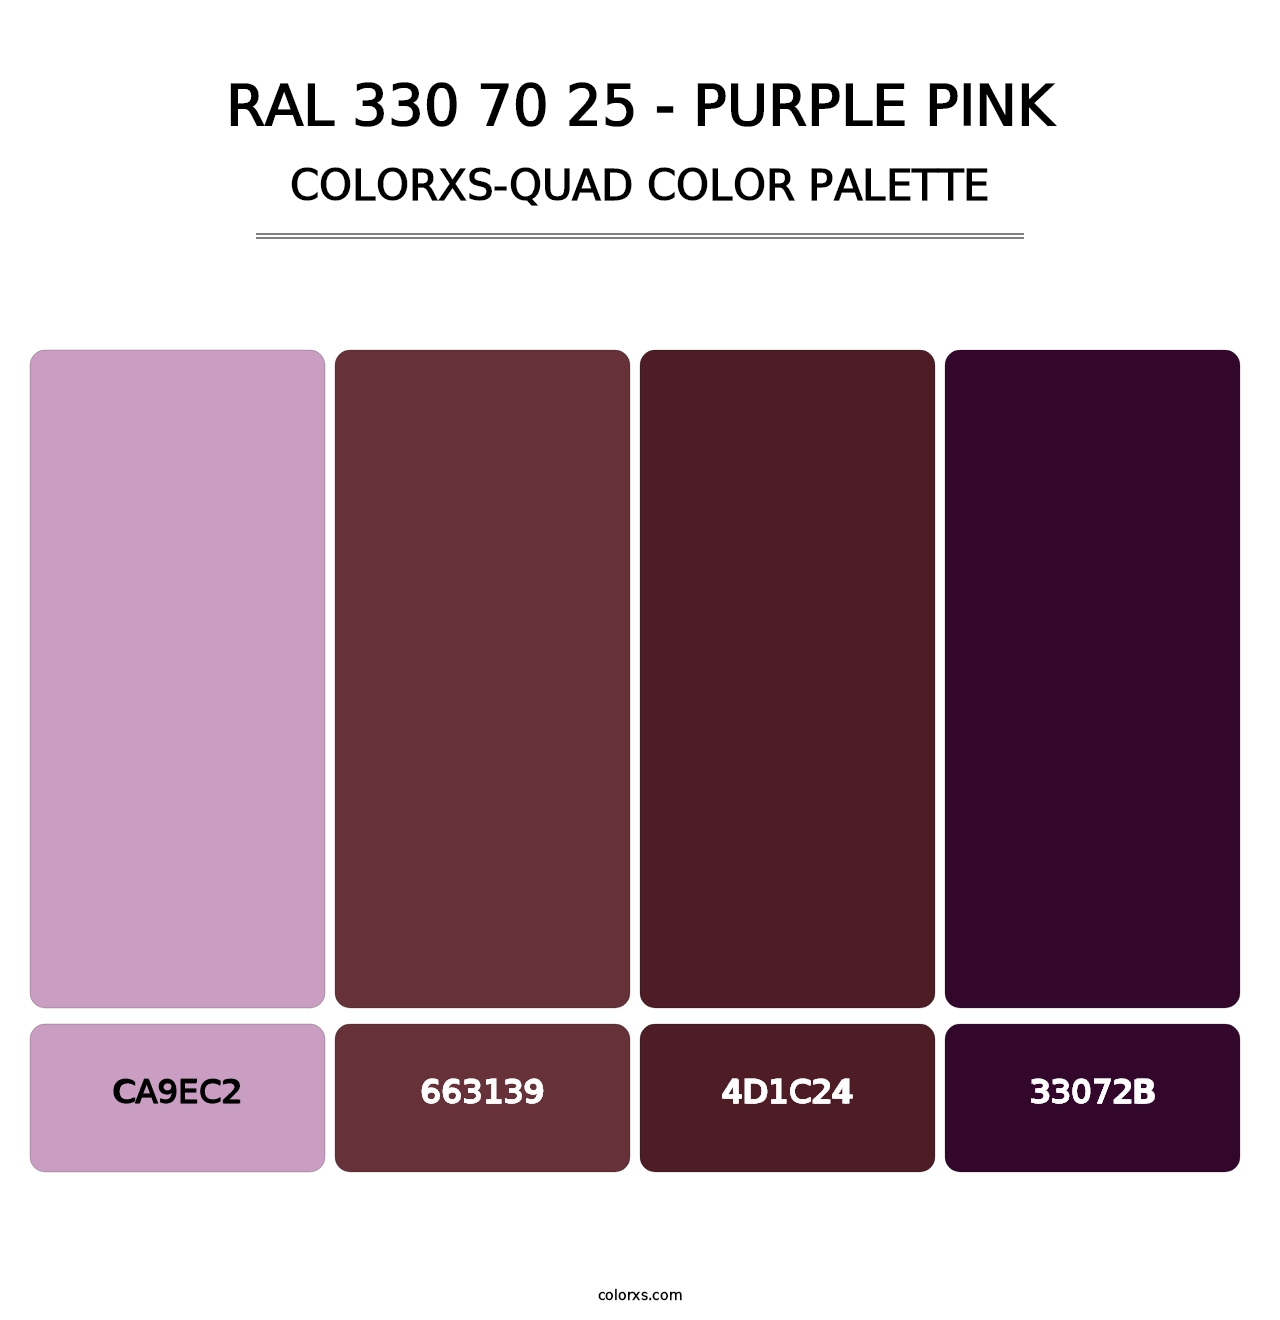 RAL 330 70 25 - Purple Pink - Colorxs Quad Palette